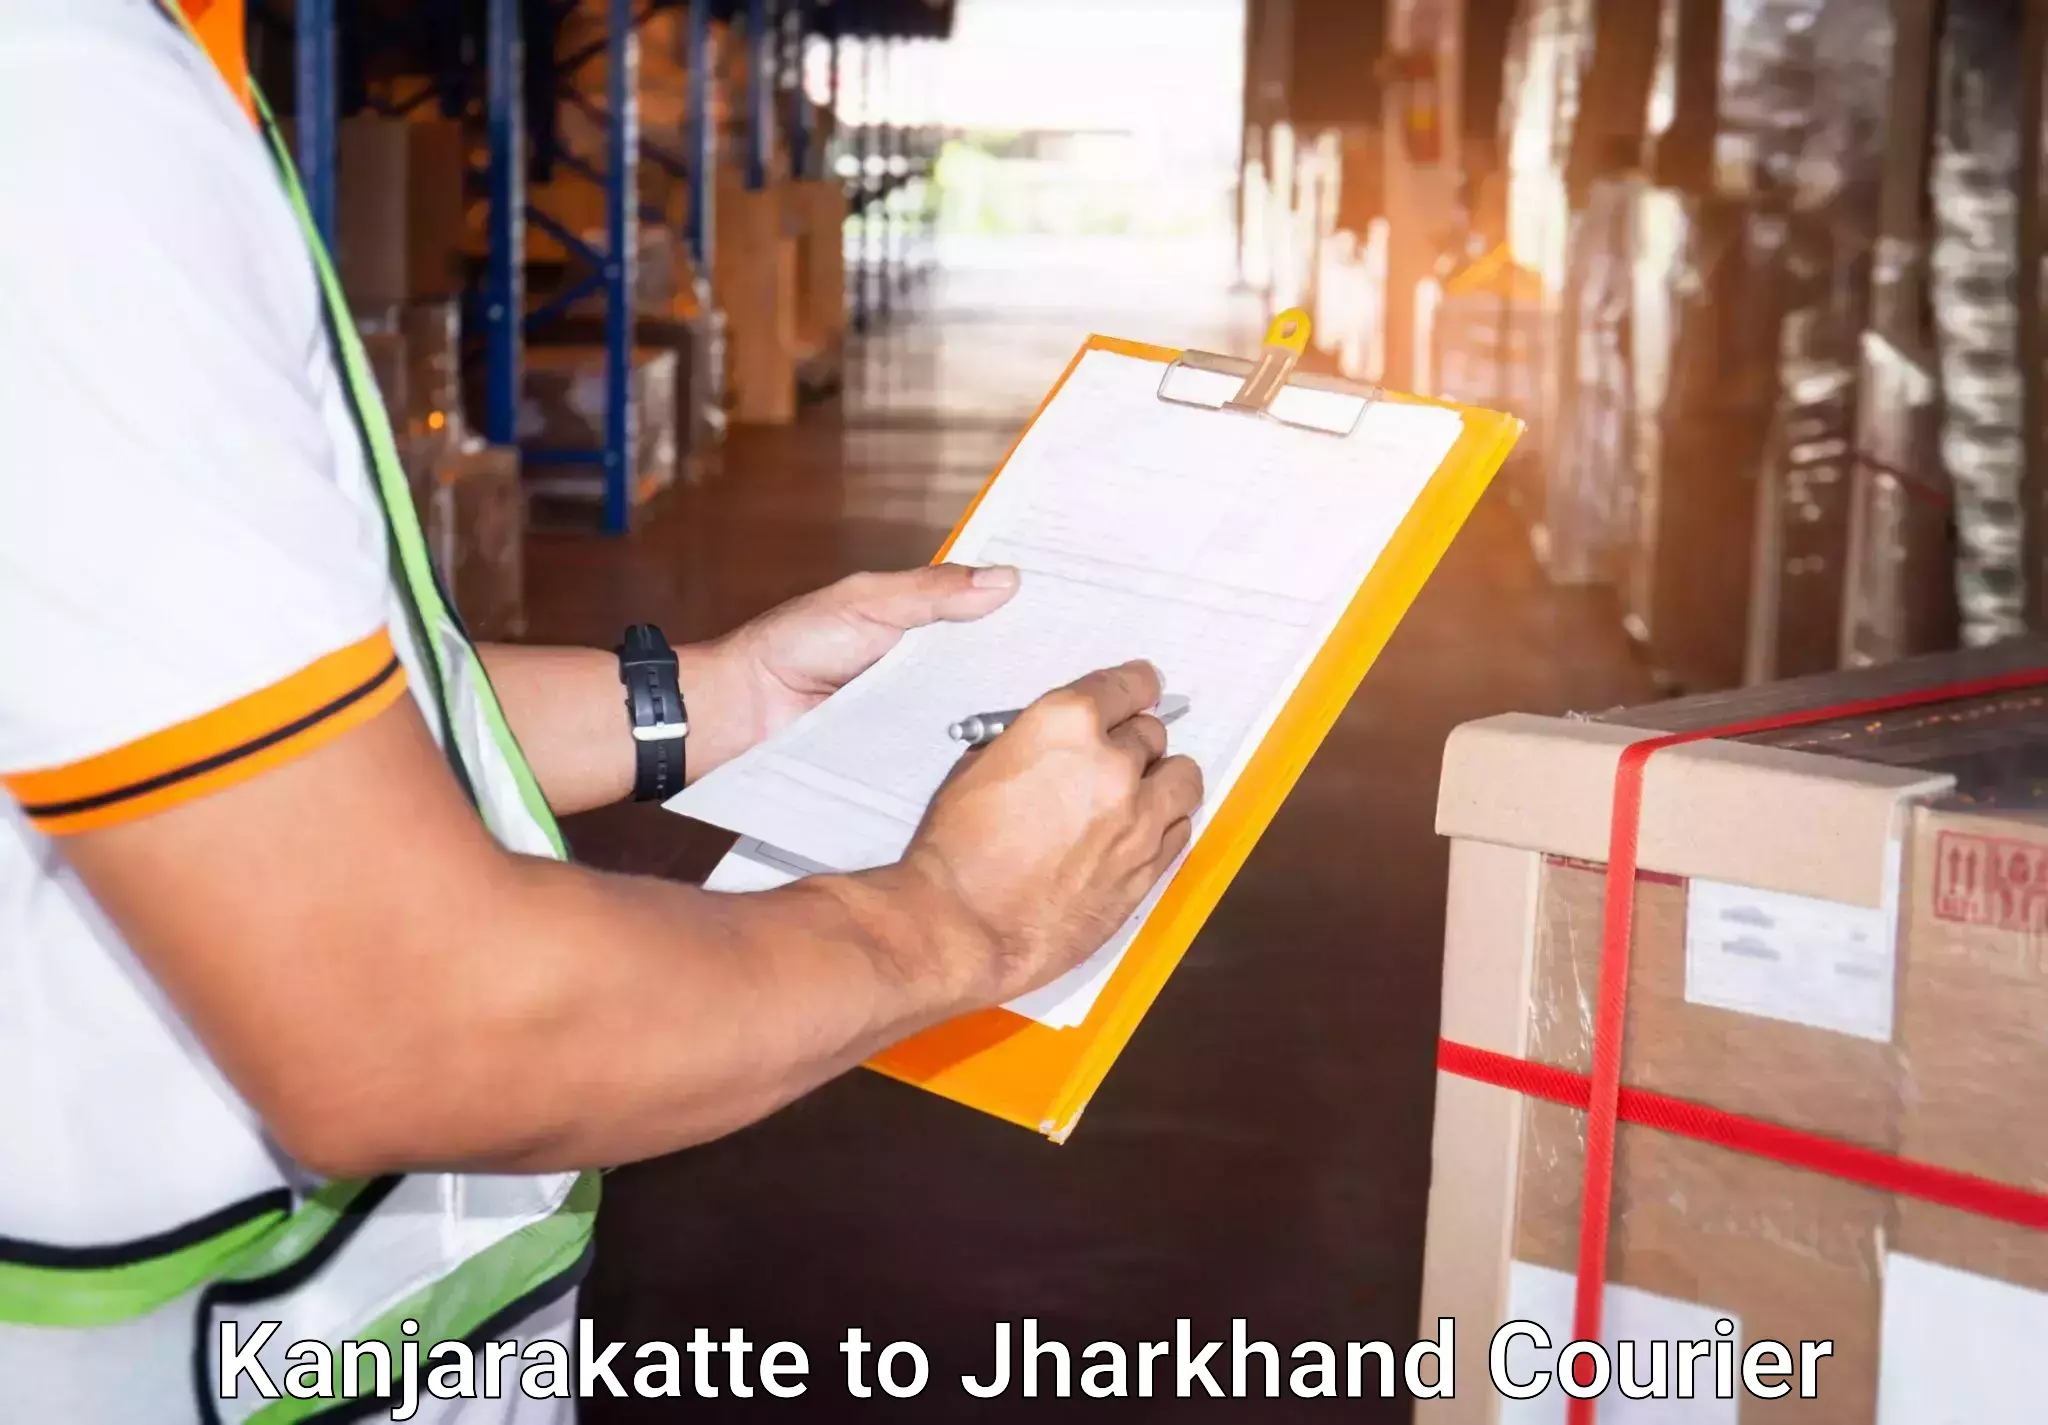 Door-to-door baggage service Kanjarakatte to Jamshedpur